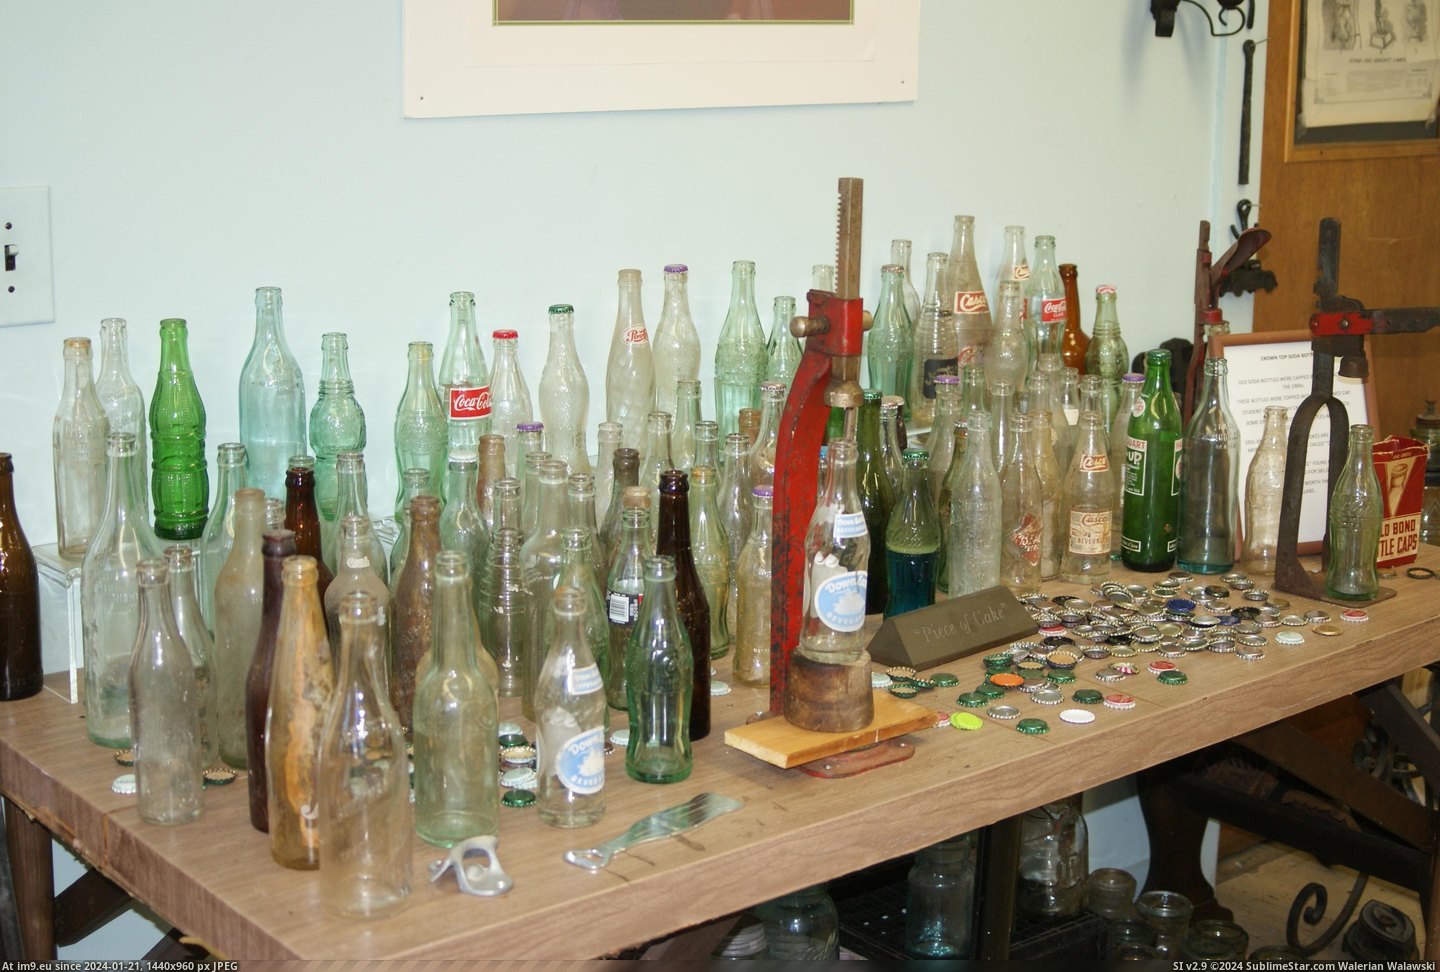 #Museum #Maine #Naples #Bottle MAINE BOTTLE MUSEUM NAPLES (22) Pic. (Изображение из альбом MAINE BOTTLE MUSEUM))